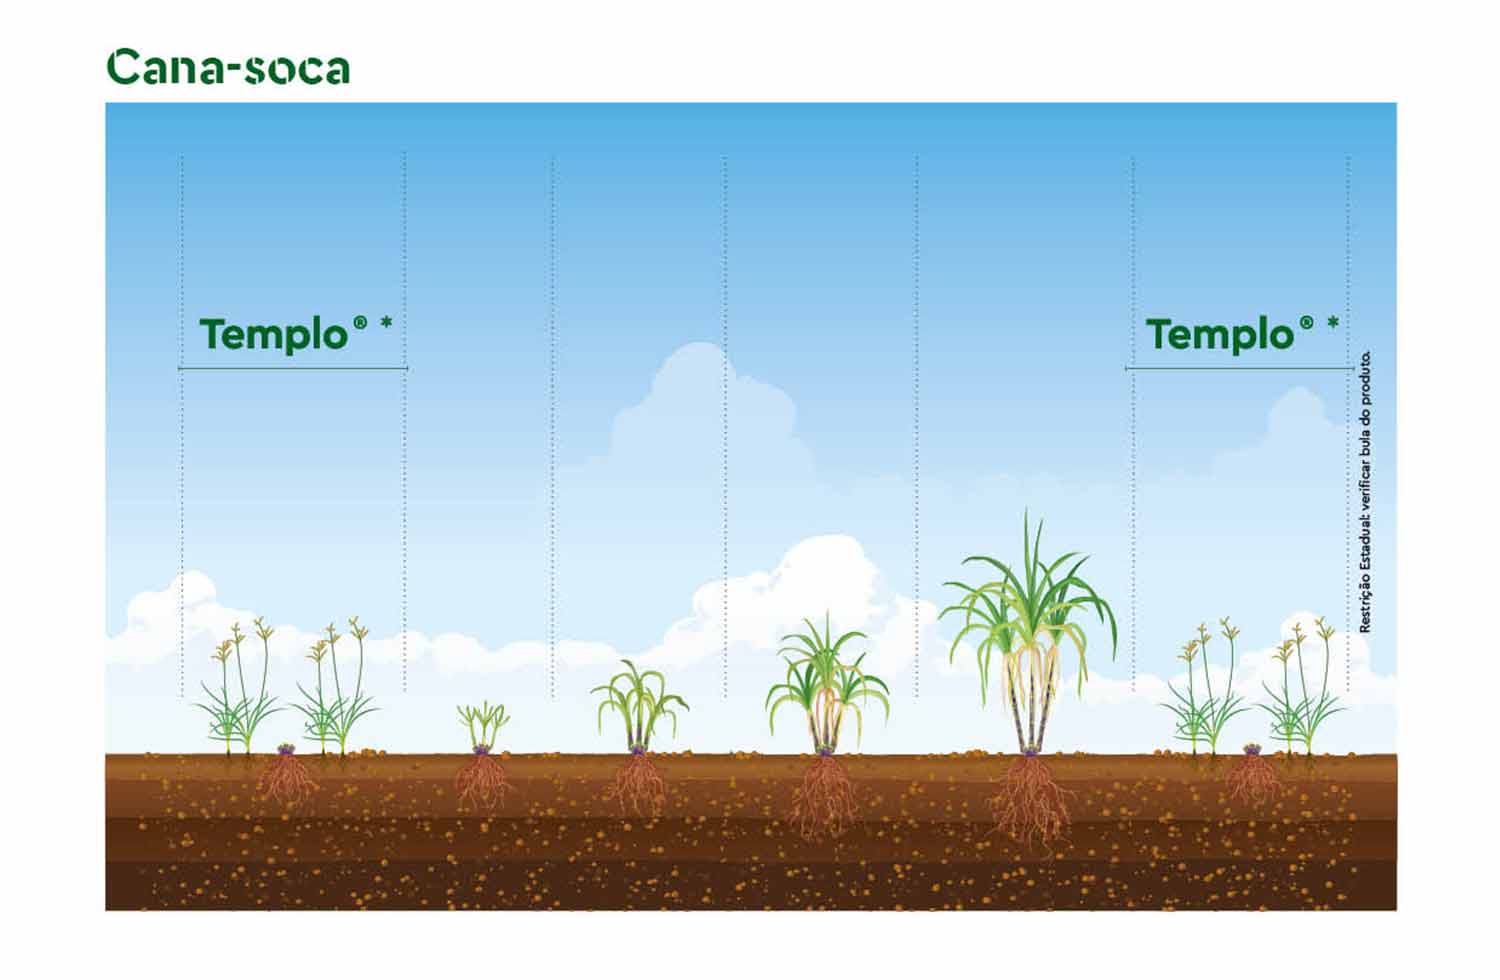 posicionamento do herbicida Templo® em cana-soca